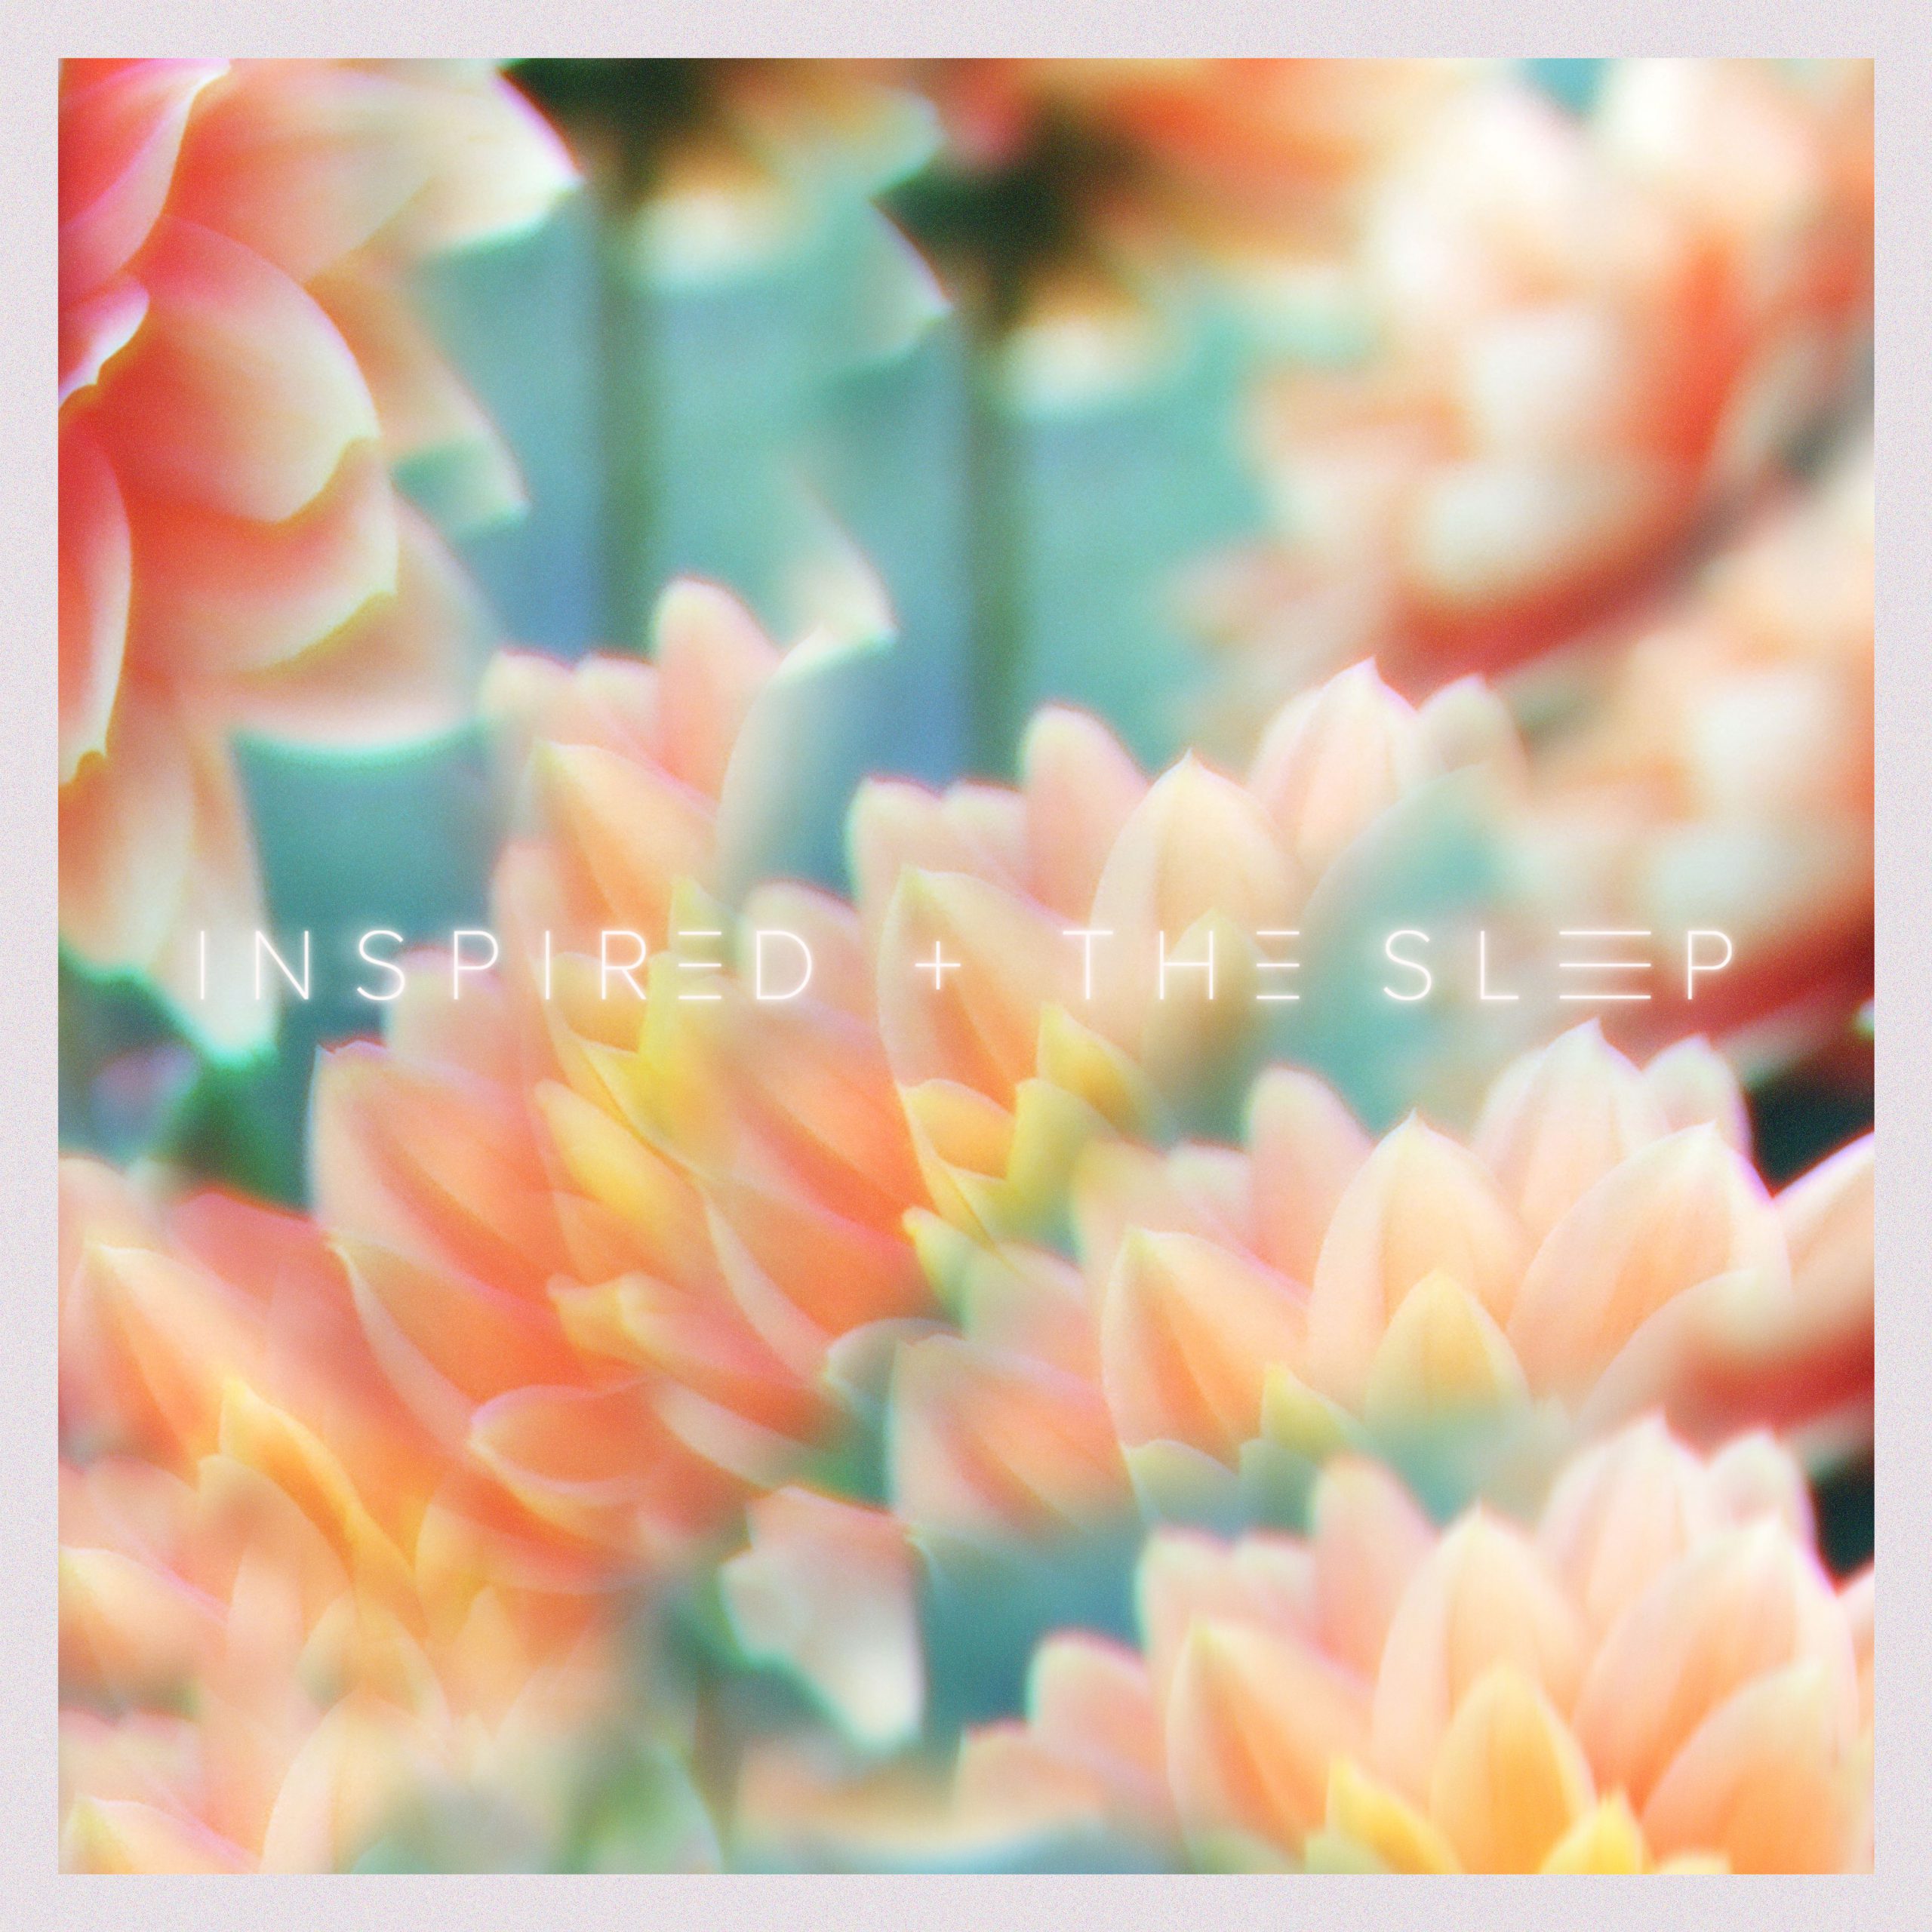 Inspired & The Sleep - People